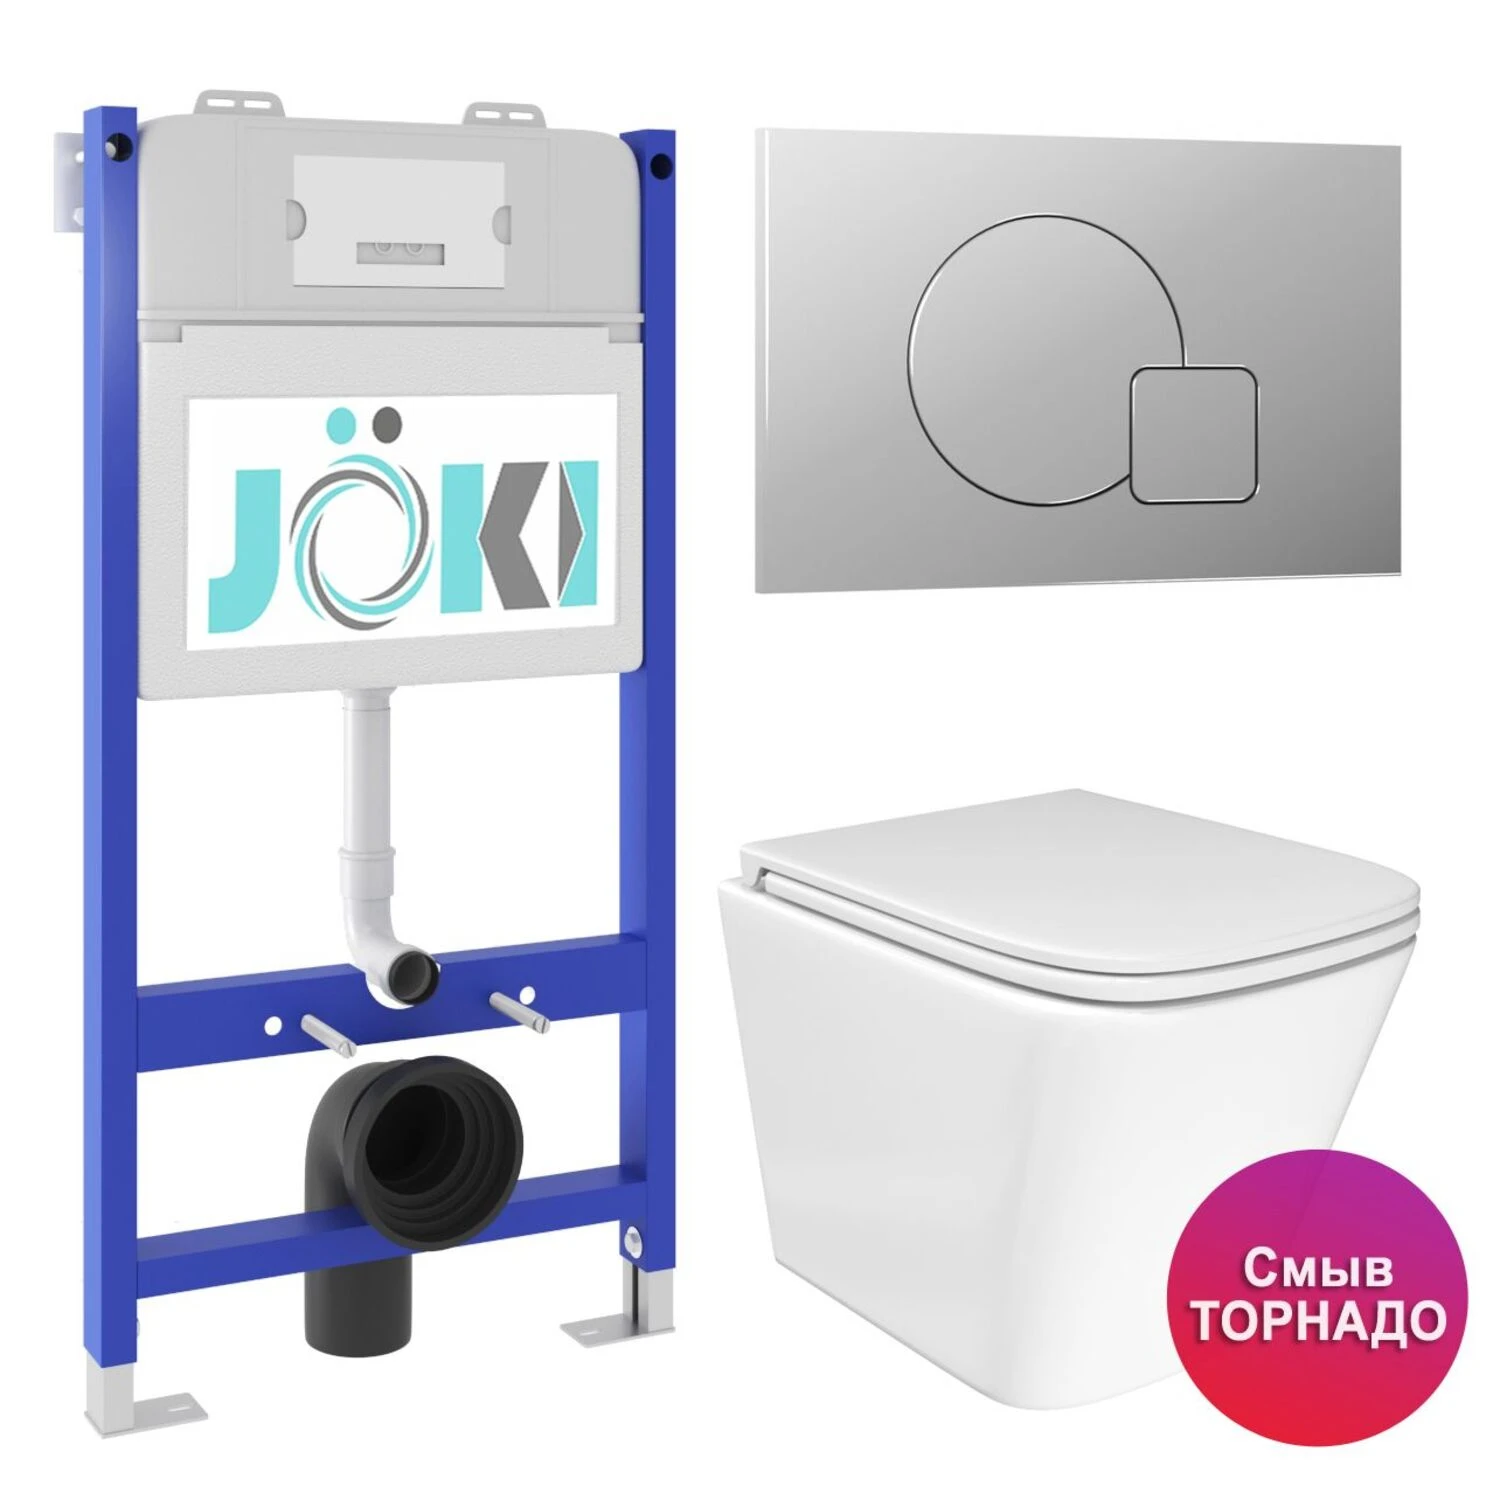 Комплект: JOKI Инсталляция JK03351+Кнопка JK022537CH хром+Verna T JK3031025 унитаз белый, смыв Торнадо